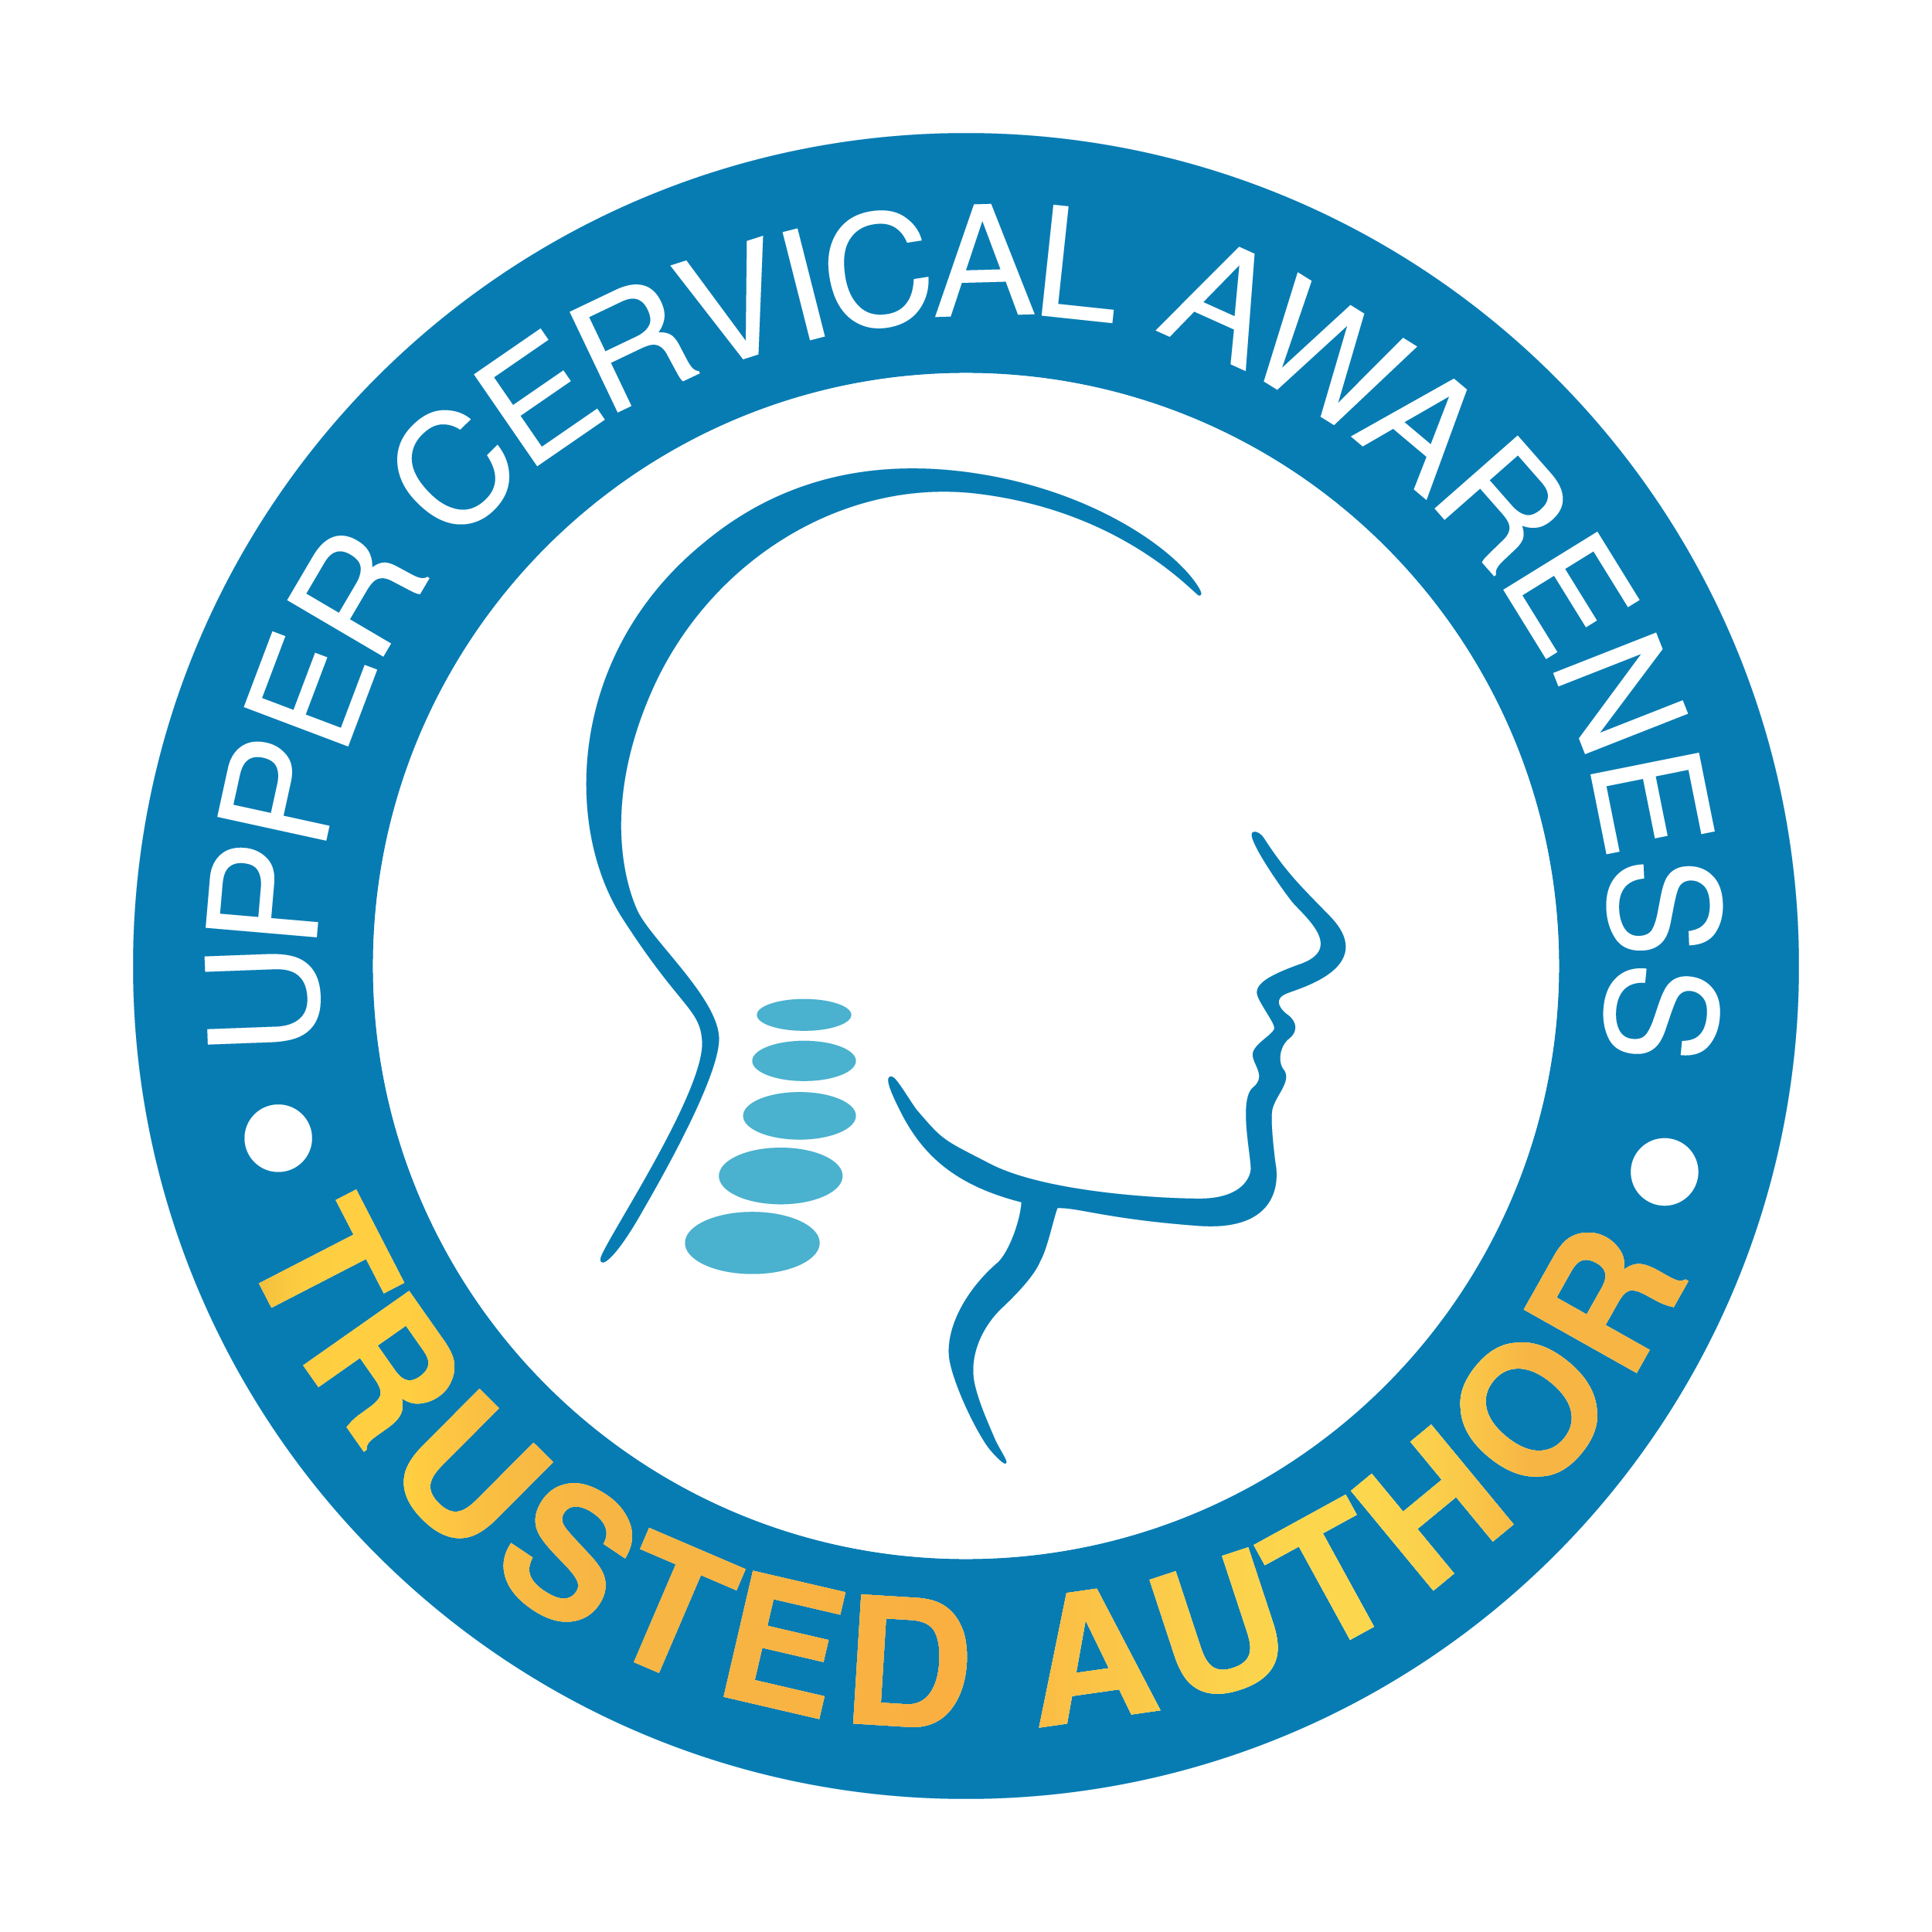 Find me on Upper Cervical Awareness